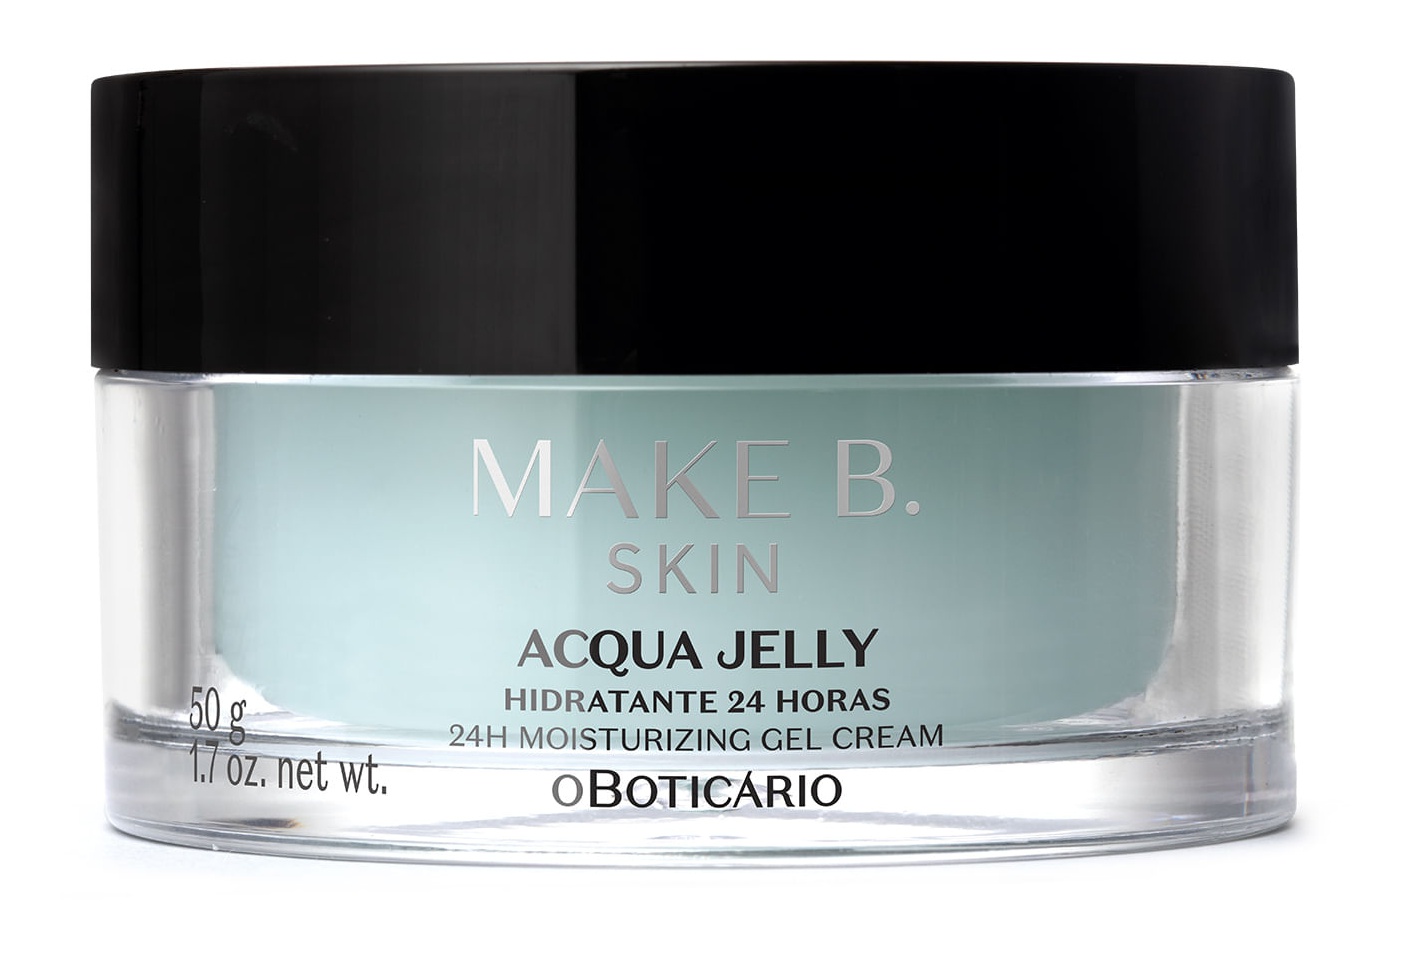 O Boticário Hidratante Facial 24 Horas Acqua Jelly Make B. Skin